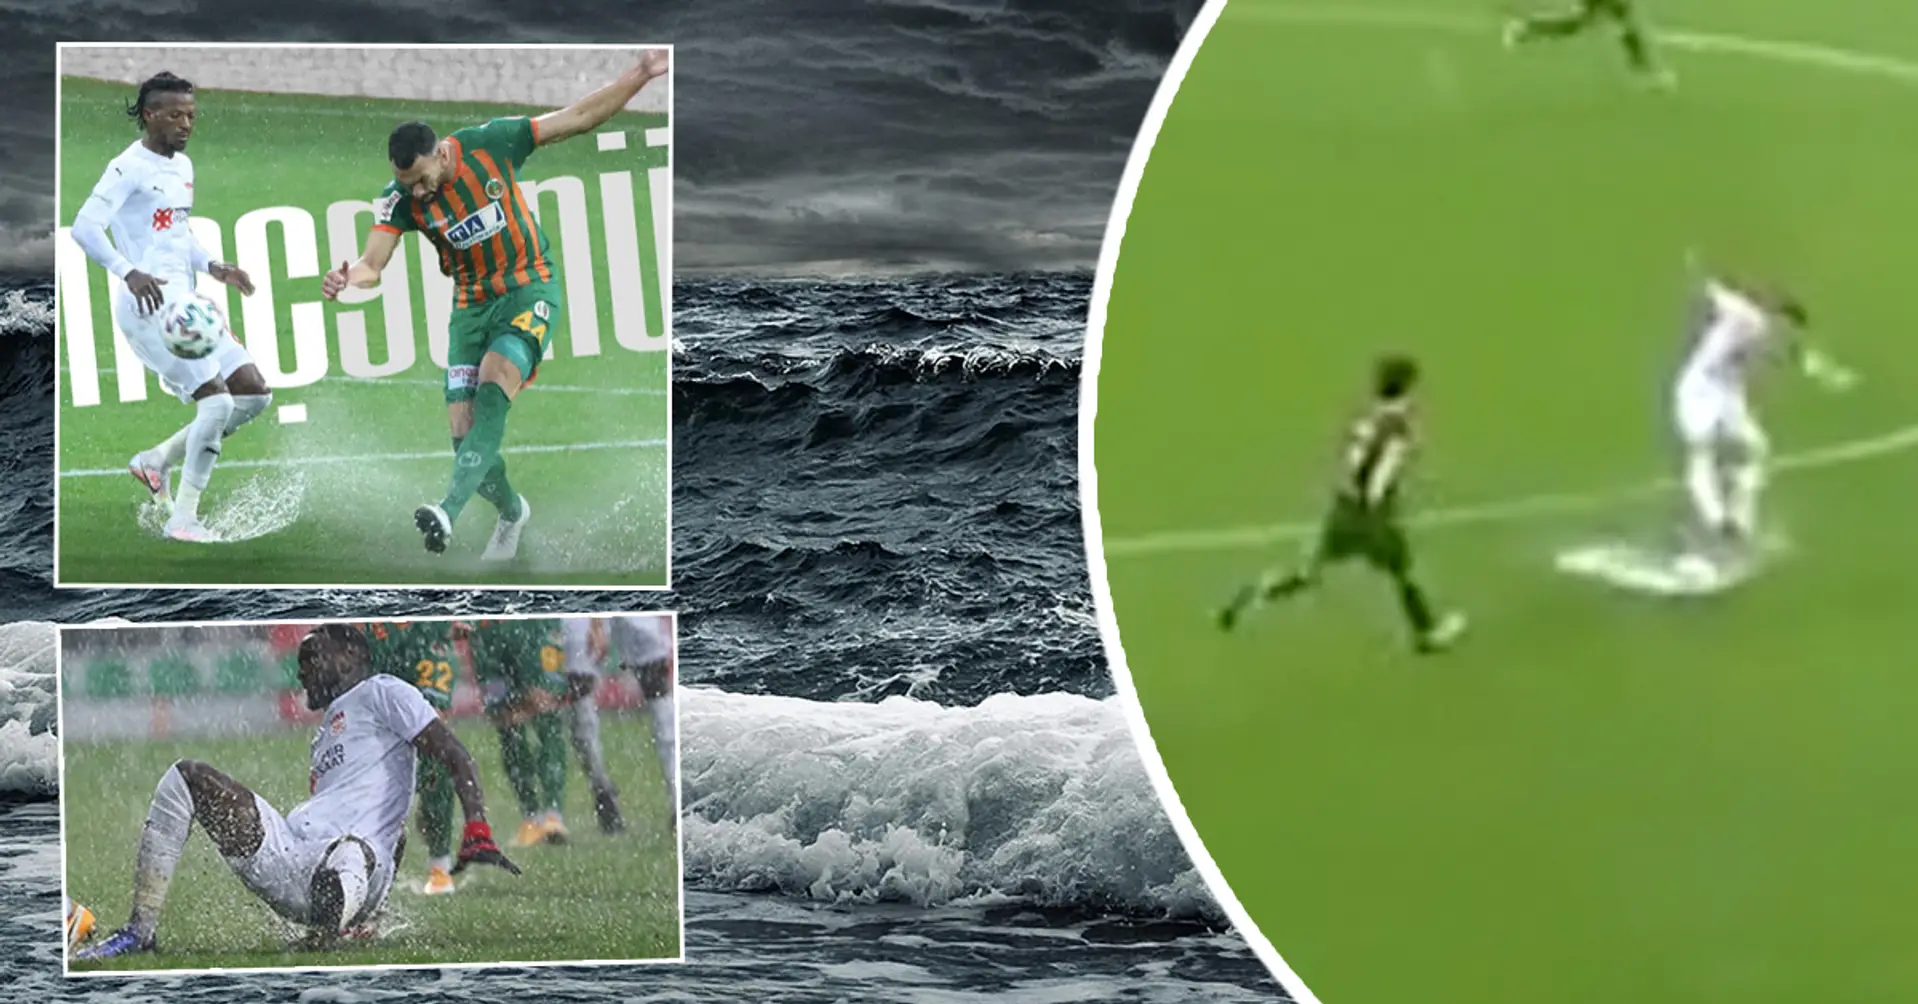 `` هكذا تتعامل مع الكوارث الطبيعية! '': لاعبي الدوري التركي يغرقون في الملعب لكنهم يواصلون القتال مثل الأسود